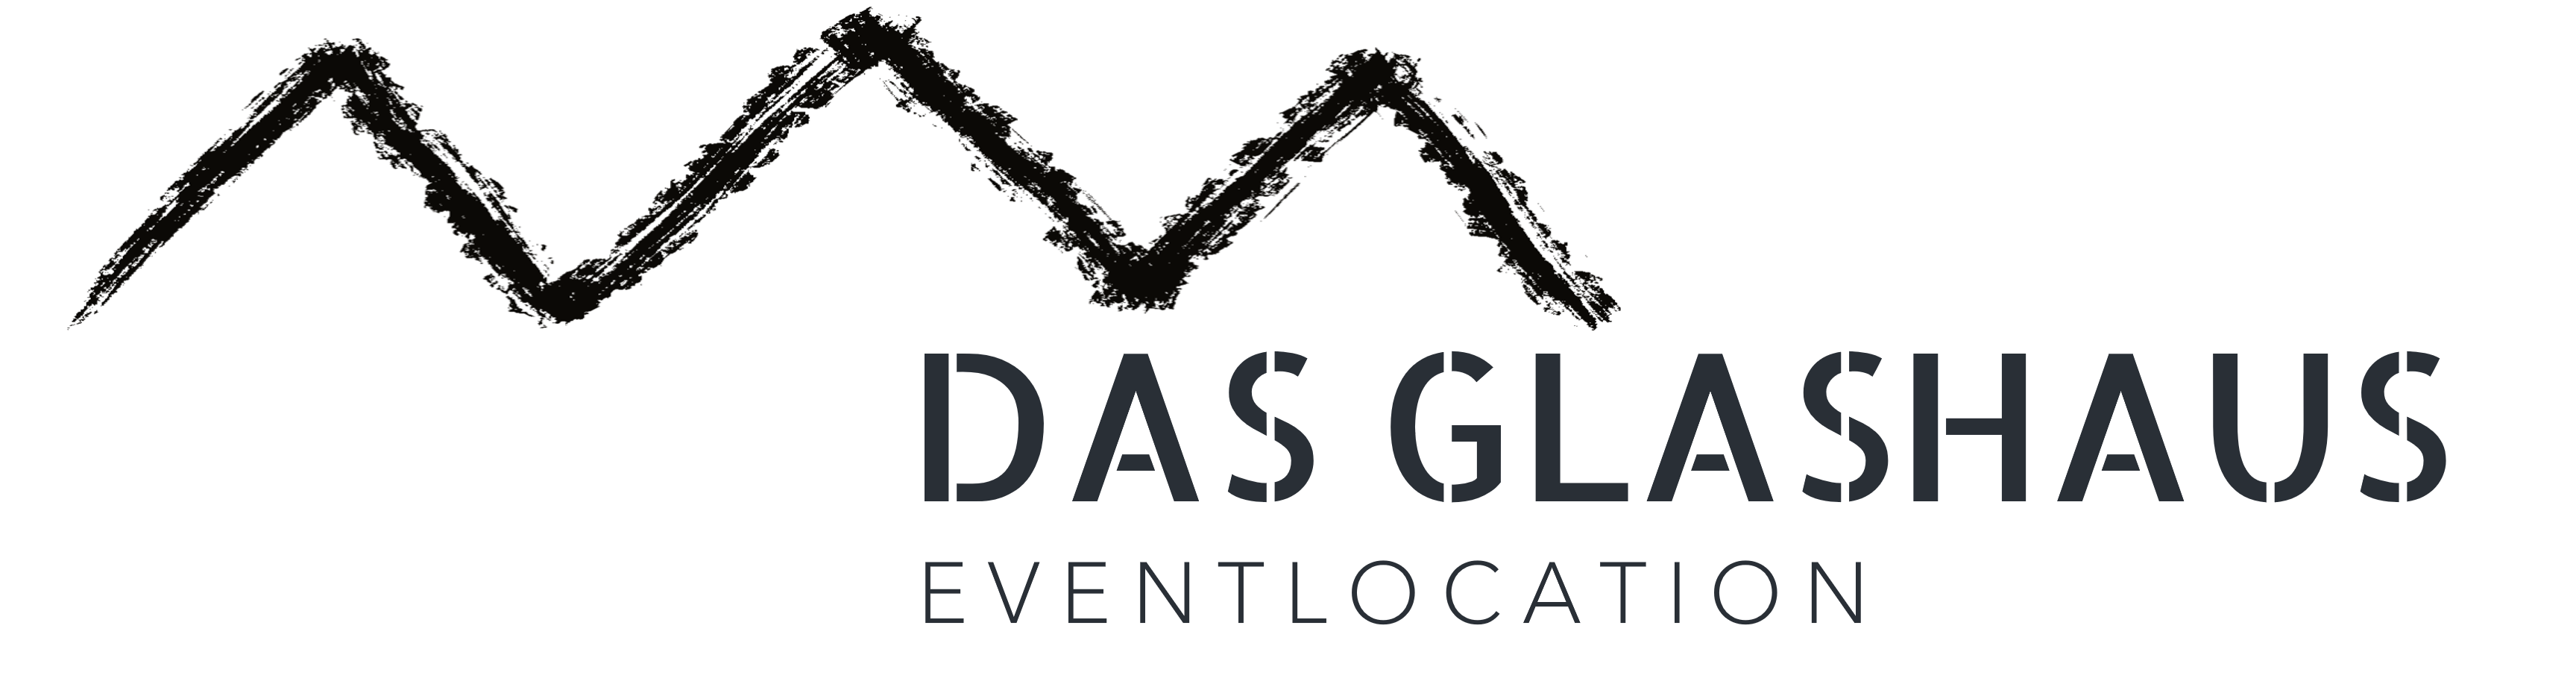 (c) Dasglashaus-eventlocation.de